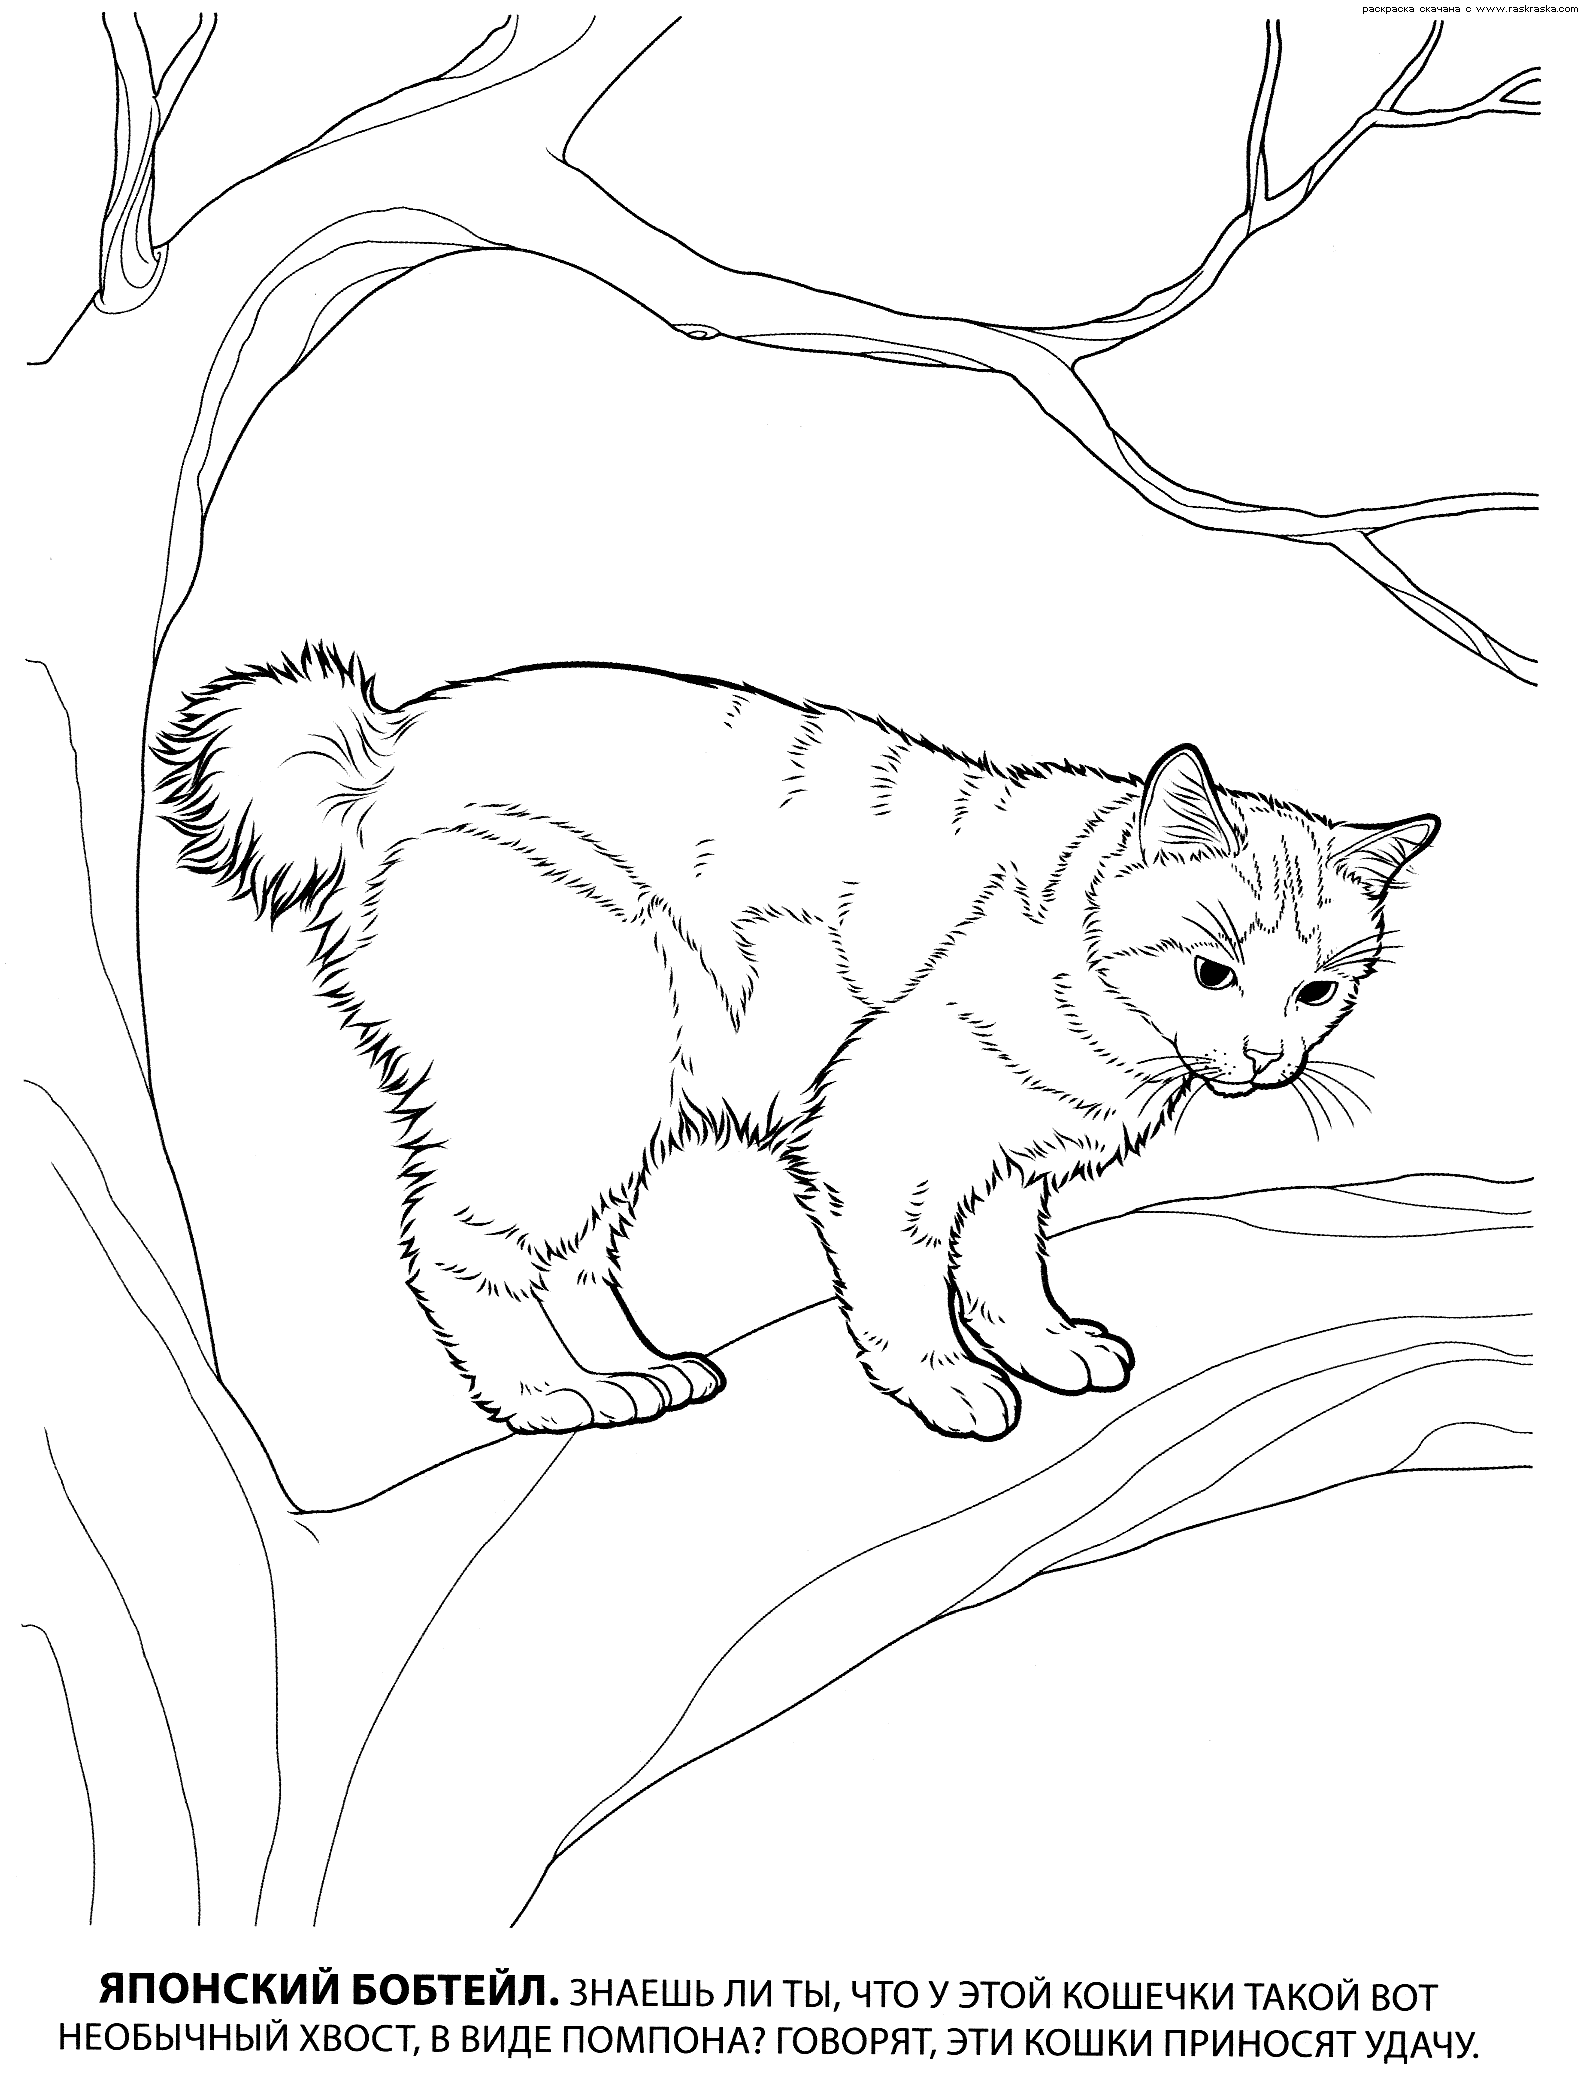 Раскраска японский бобтейл. раскраска кошка бобтейл, бобтейлы, раскраска кошки, детские картинки для раскрашивания, кошка на дереве 